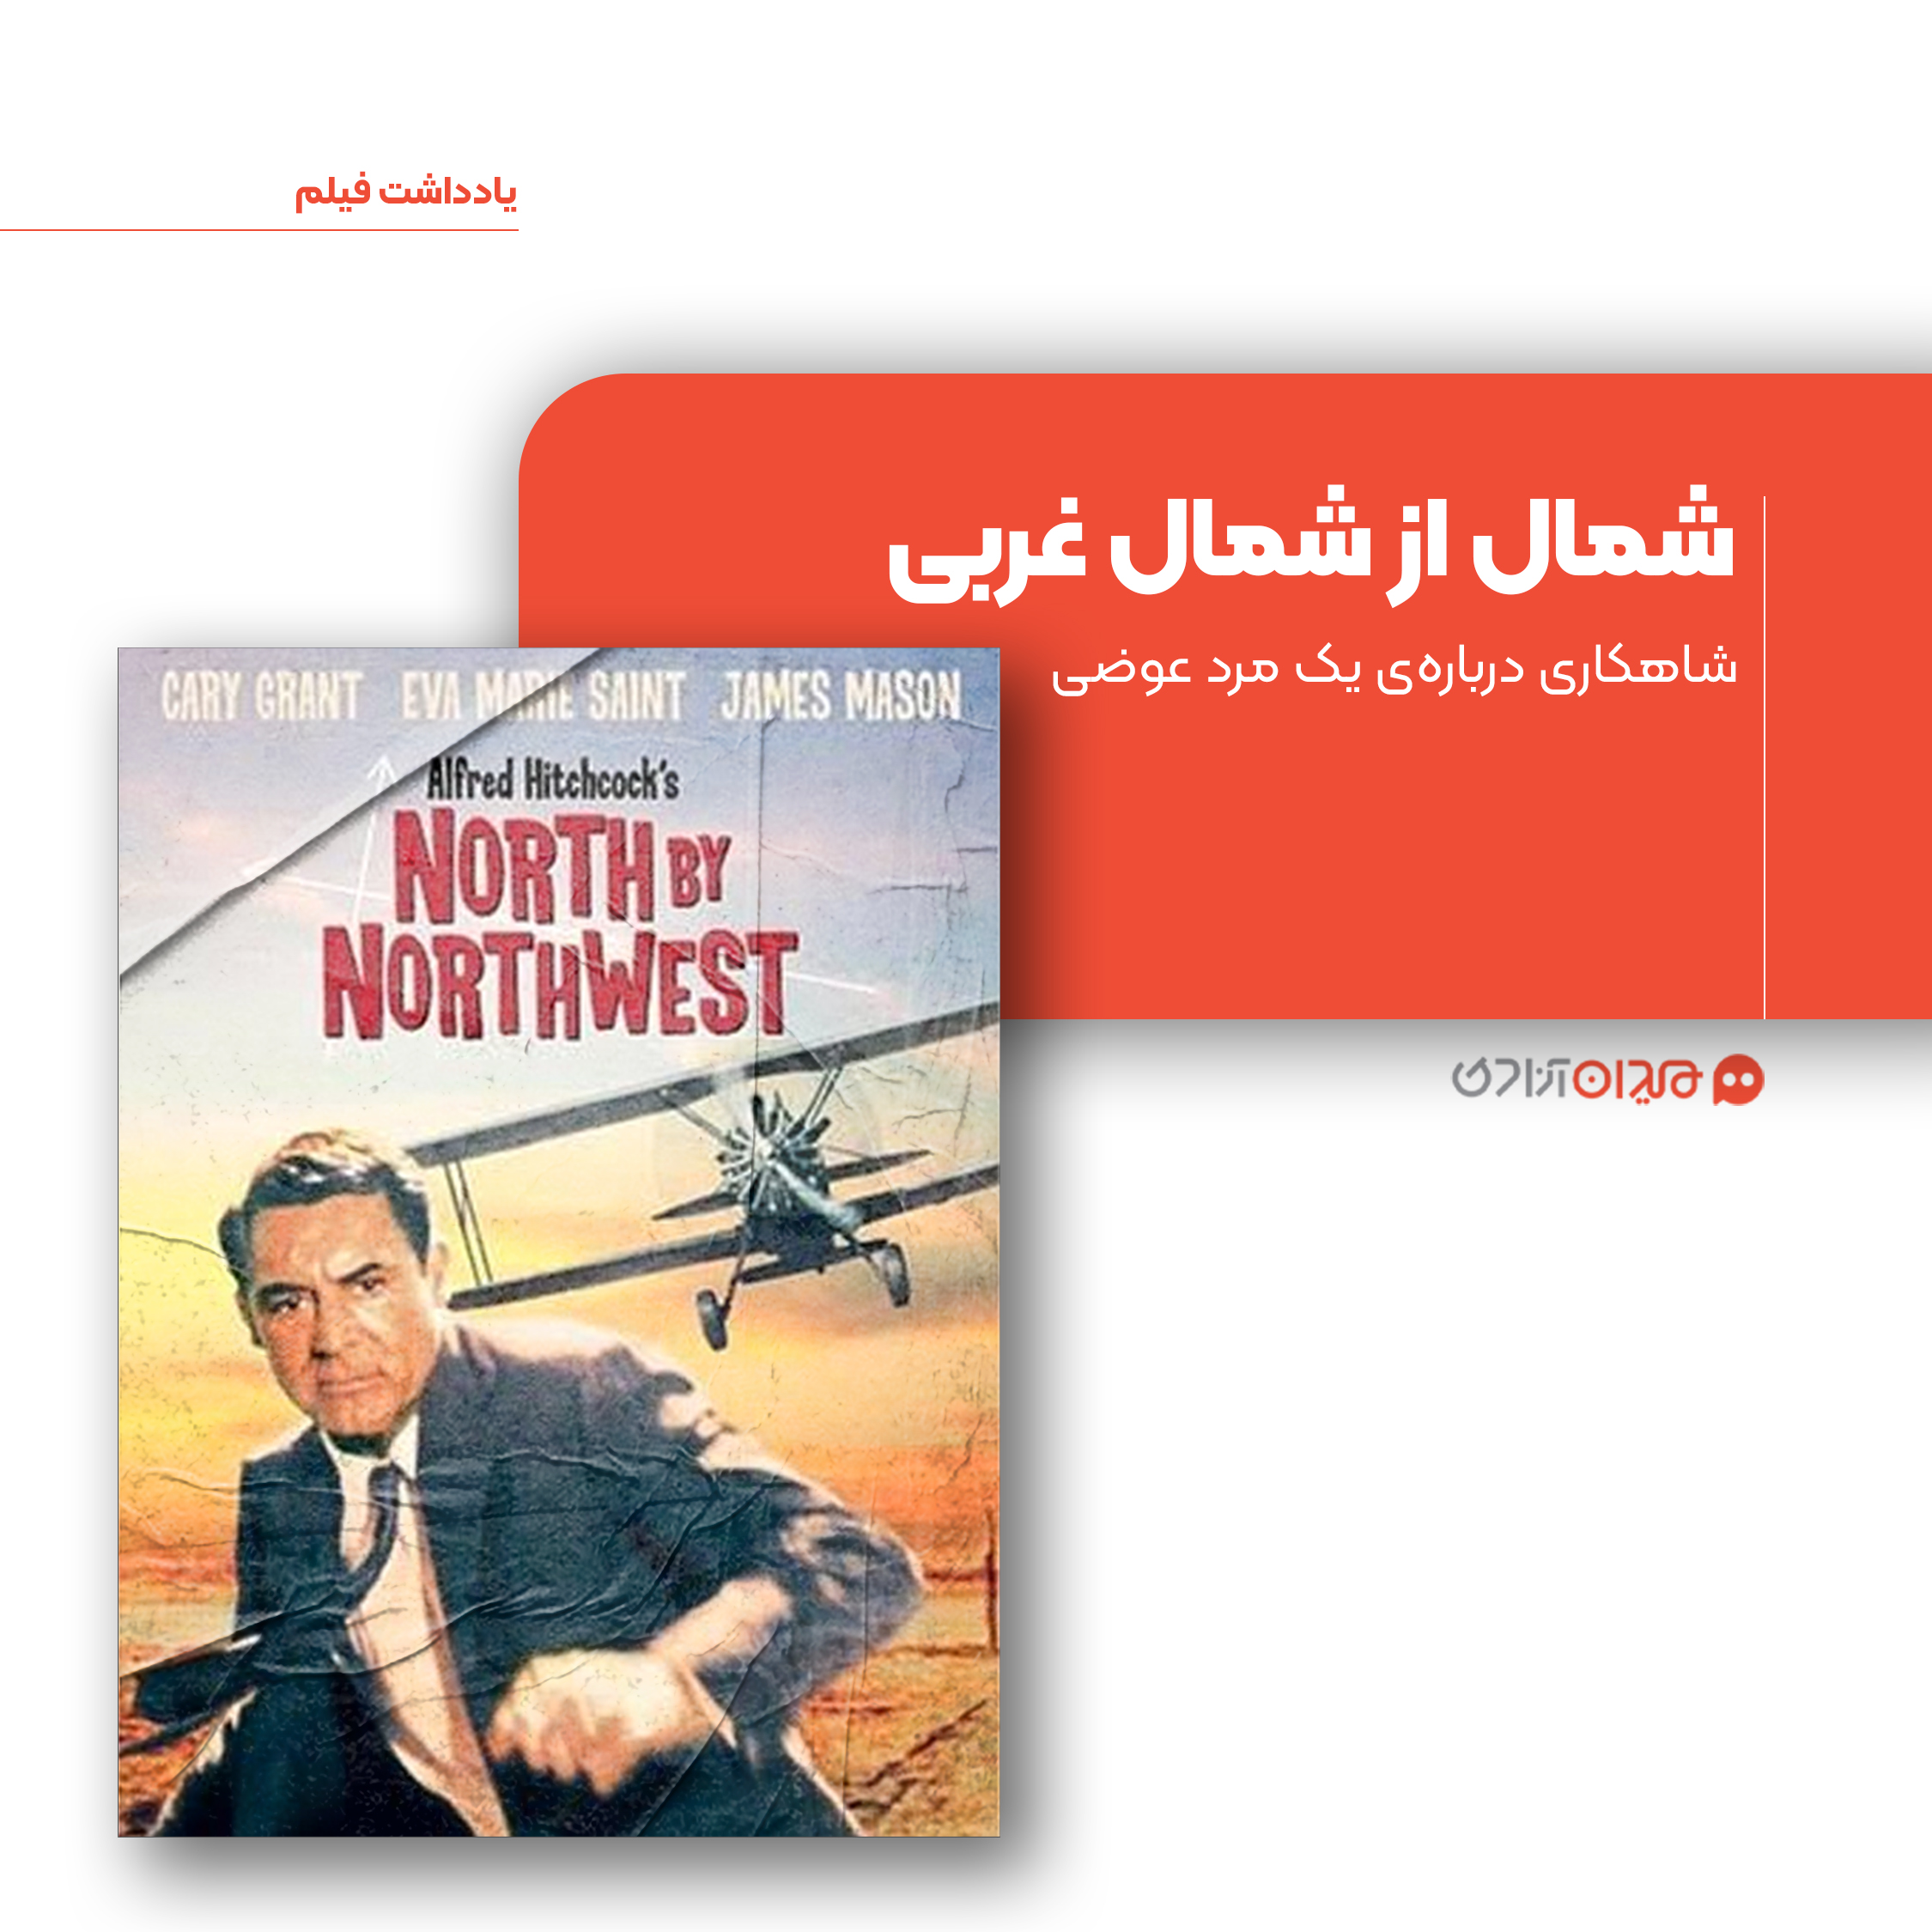 ریویو: نگاهی به فیلم «شمال از شمال غربی»، ساخته «آلفرد هیچکاک»